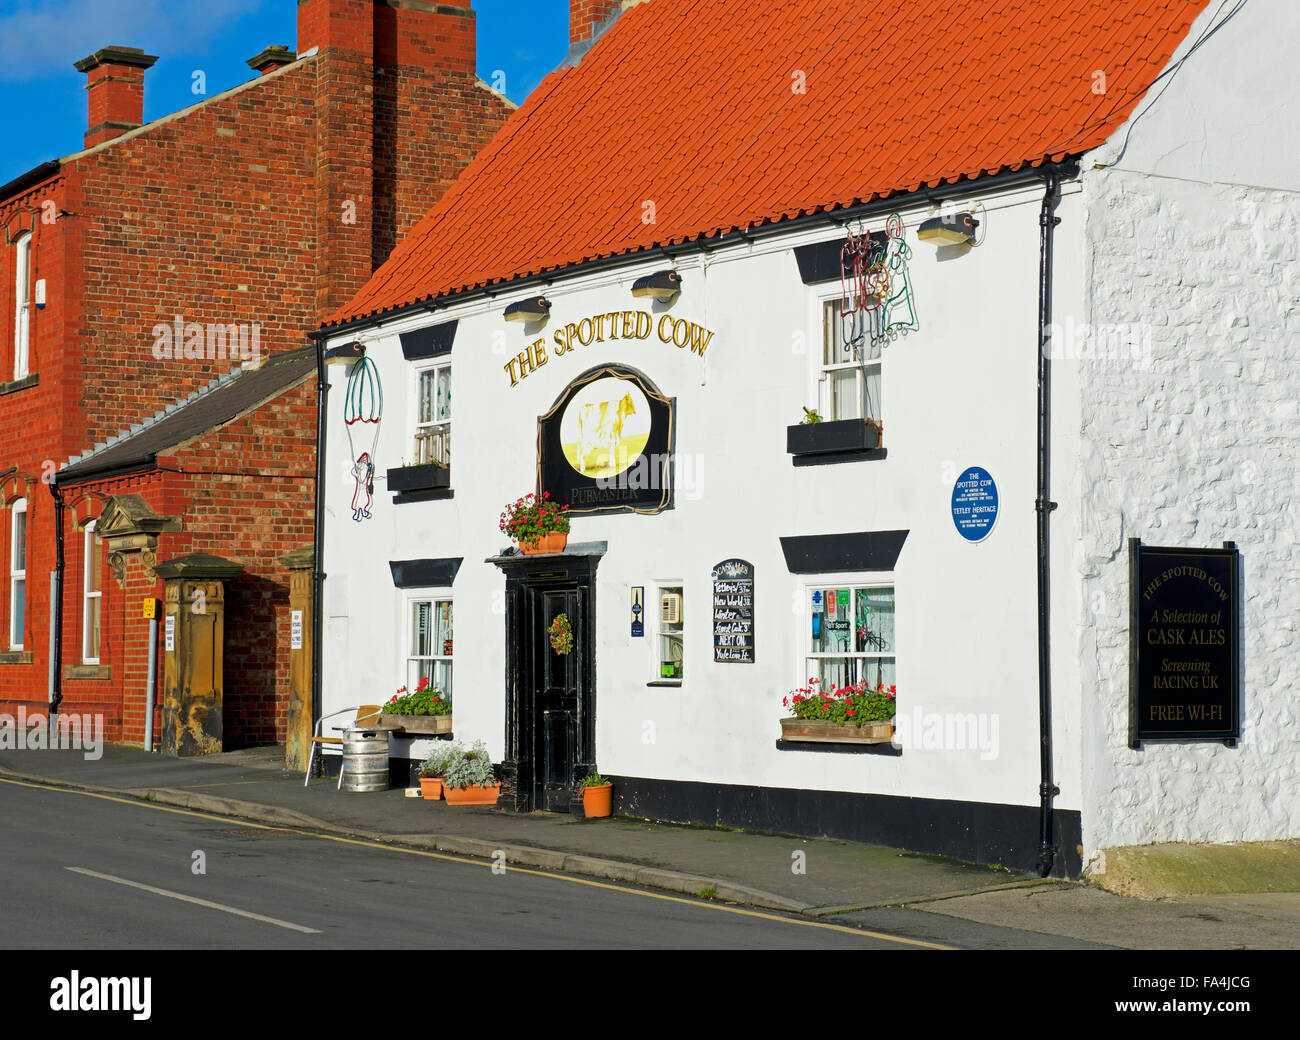 La vache tachetée, un de Tetley's heritage pubs, Malton, North Yorkshire, England UK Banque D'Images